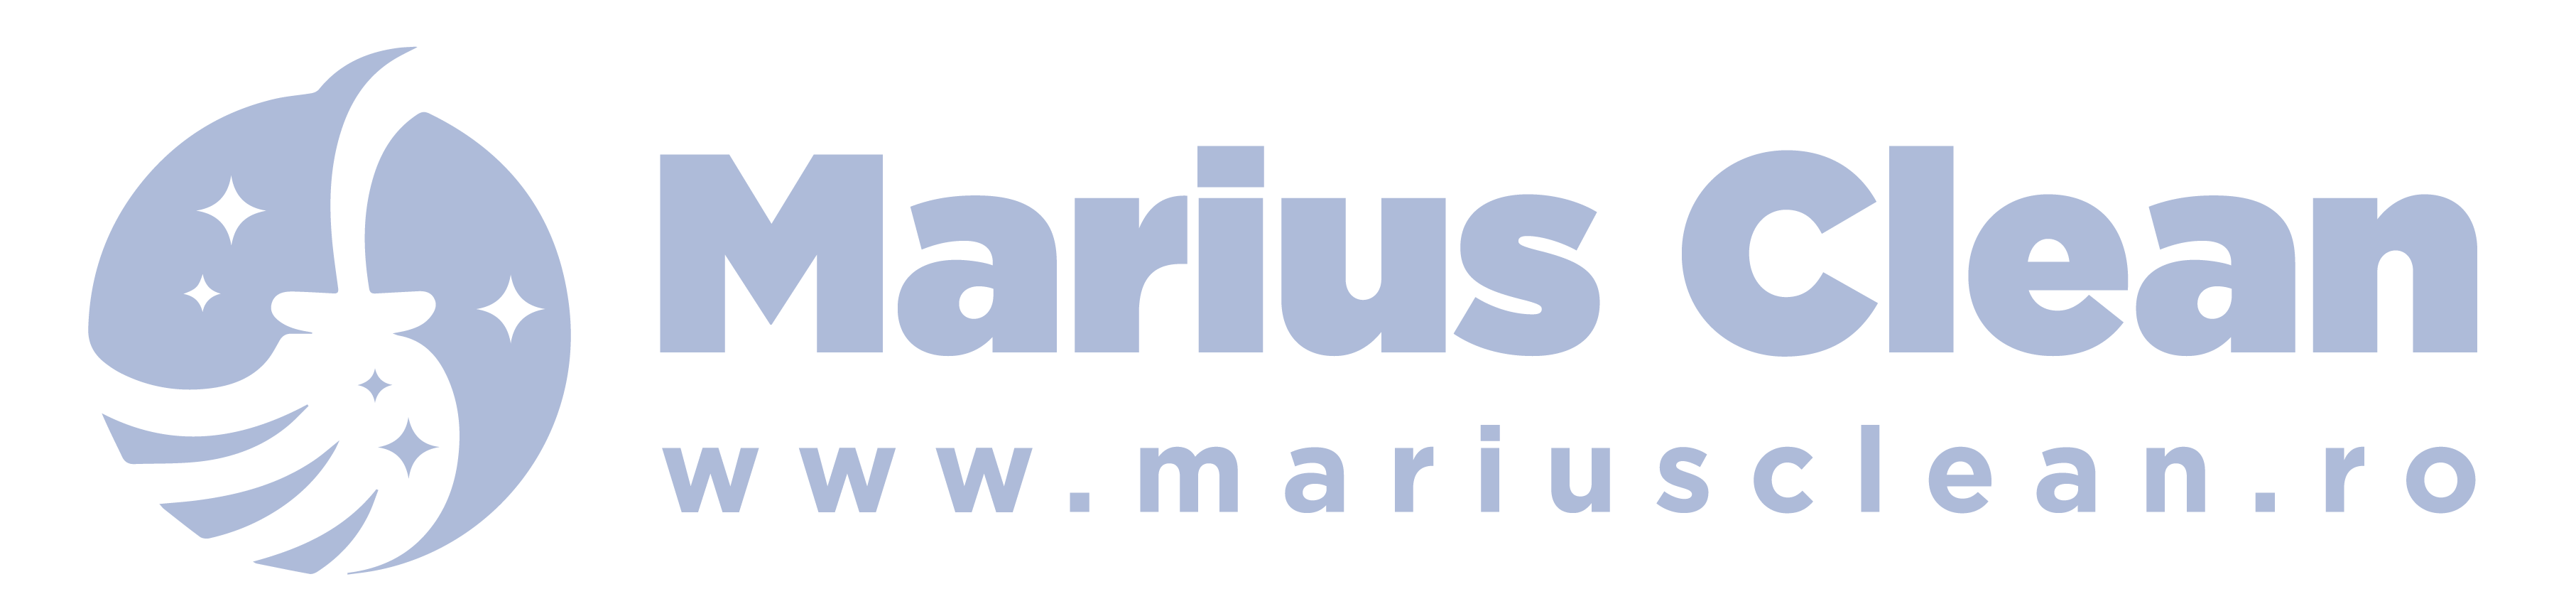 marius clean-01